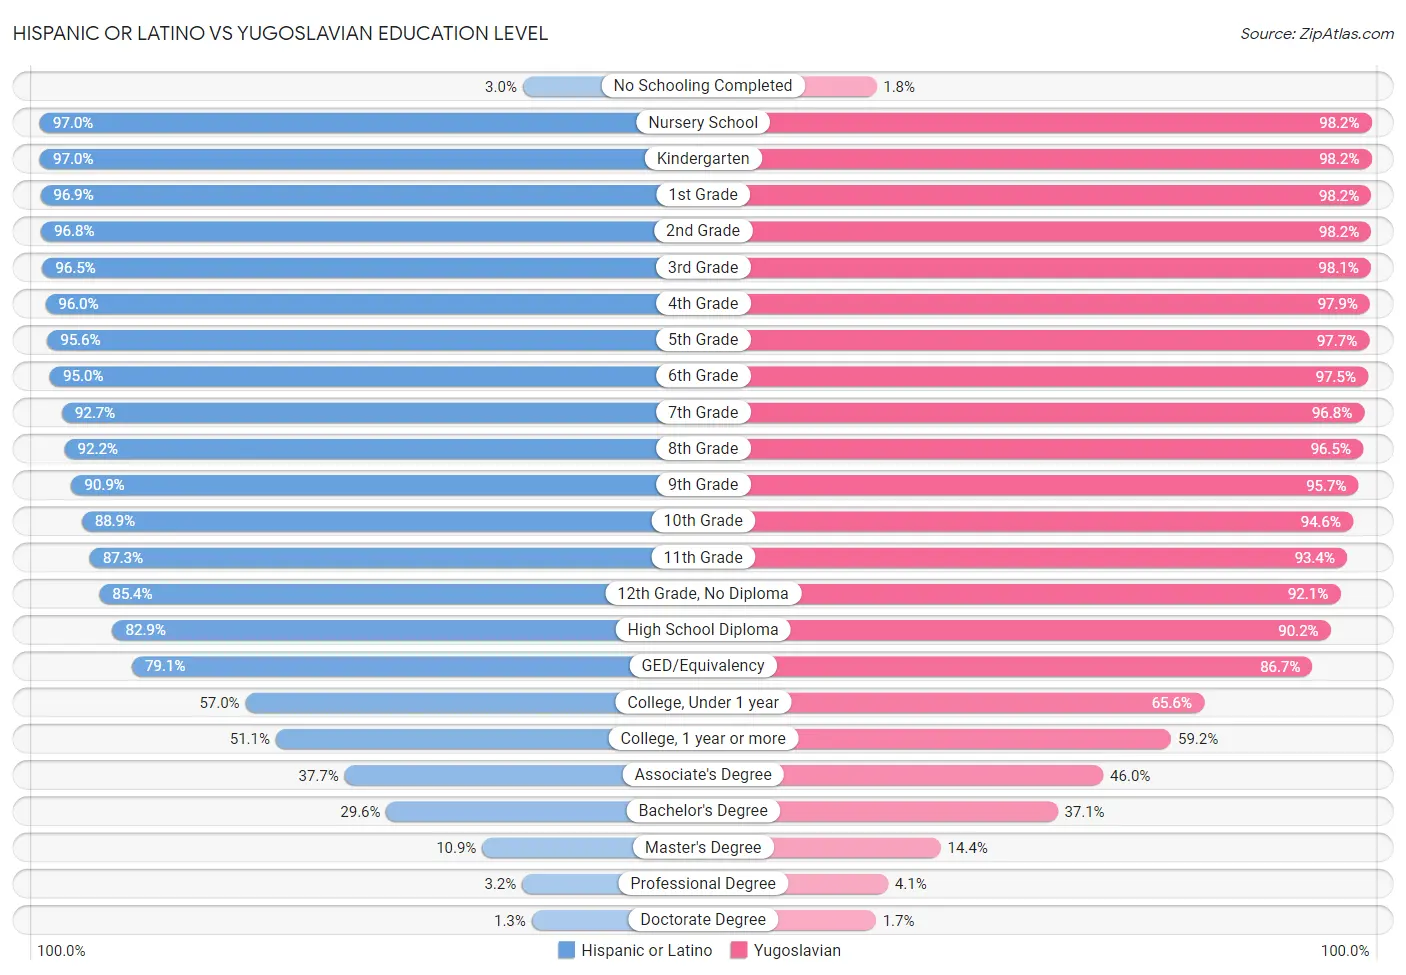 Hispanic or Latino vs Yugoslavian Education Level